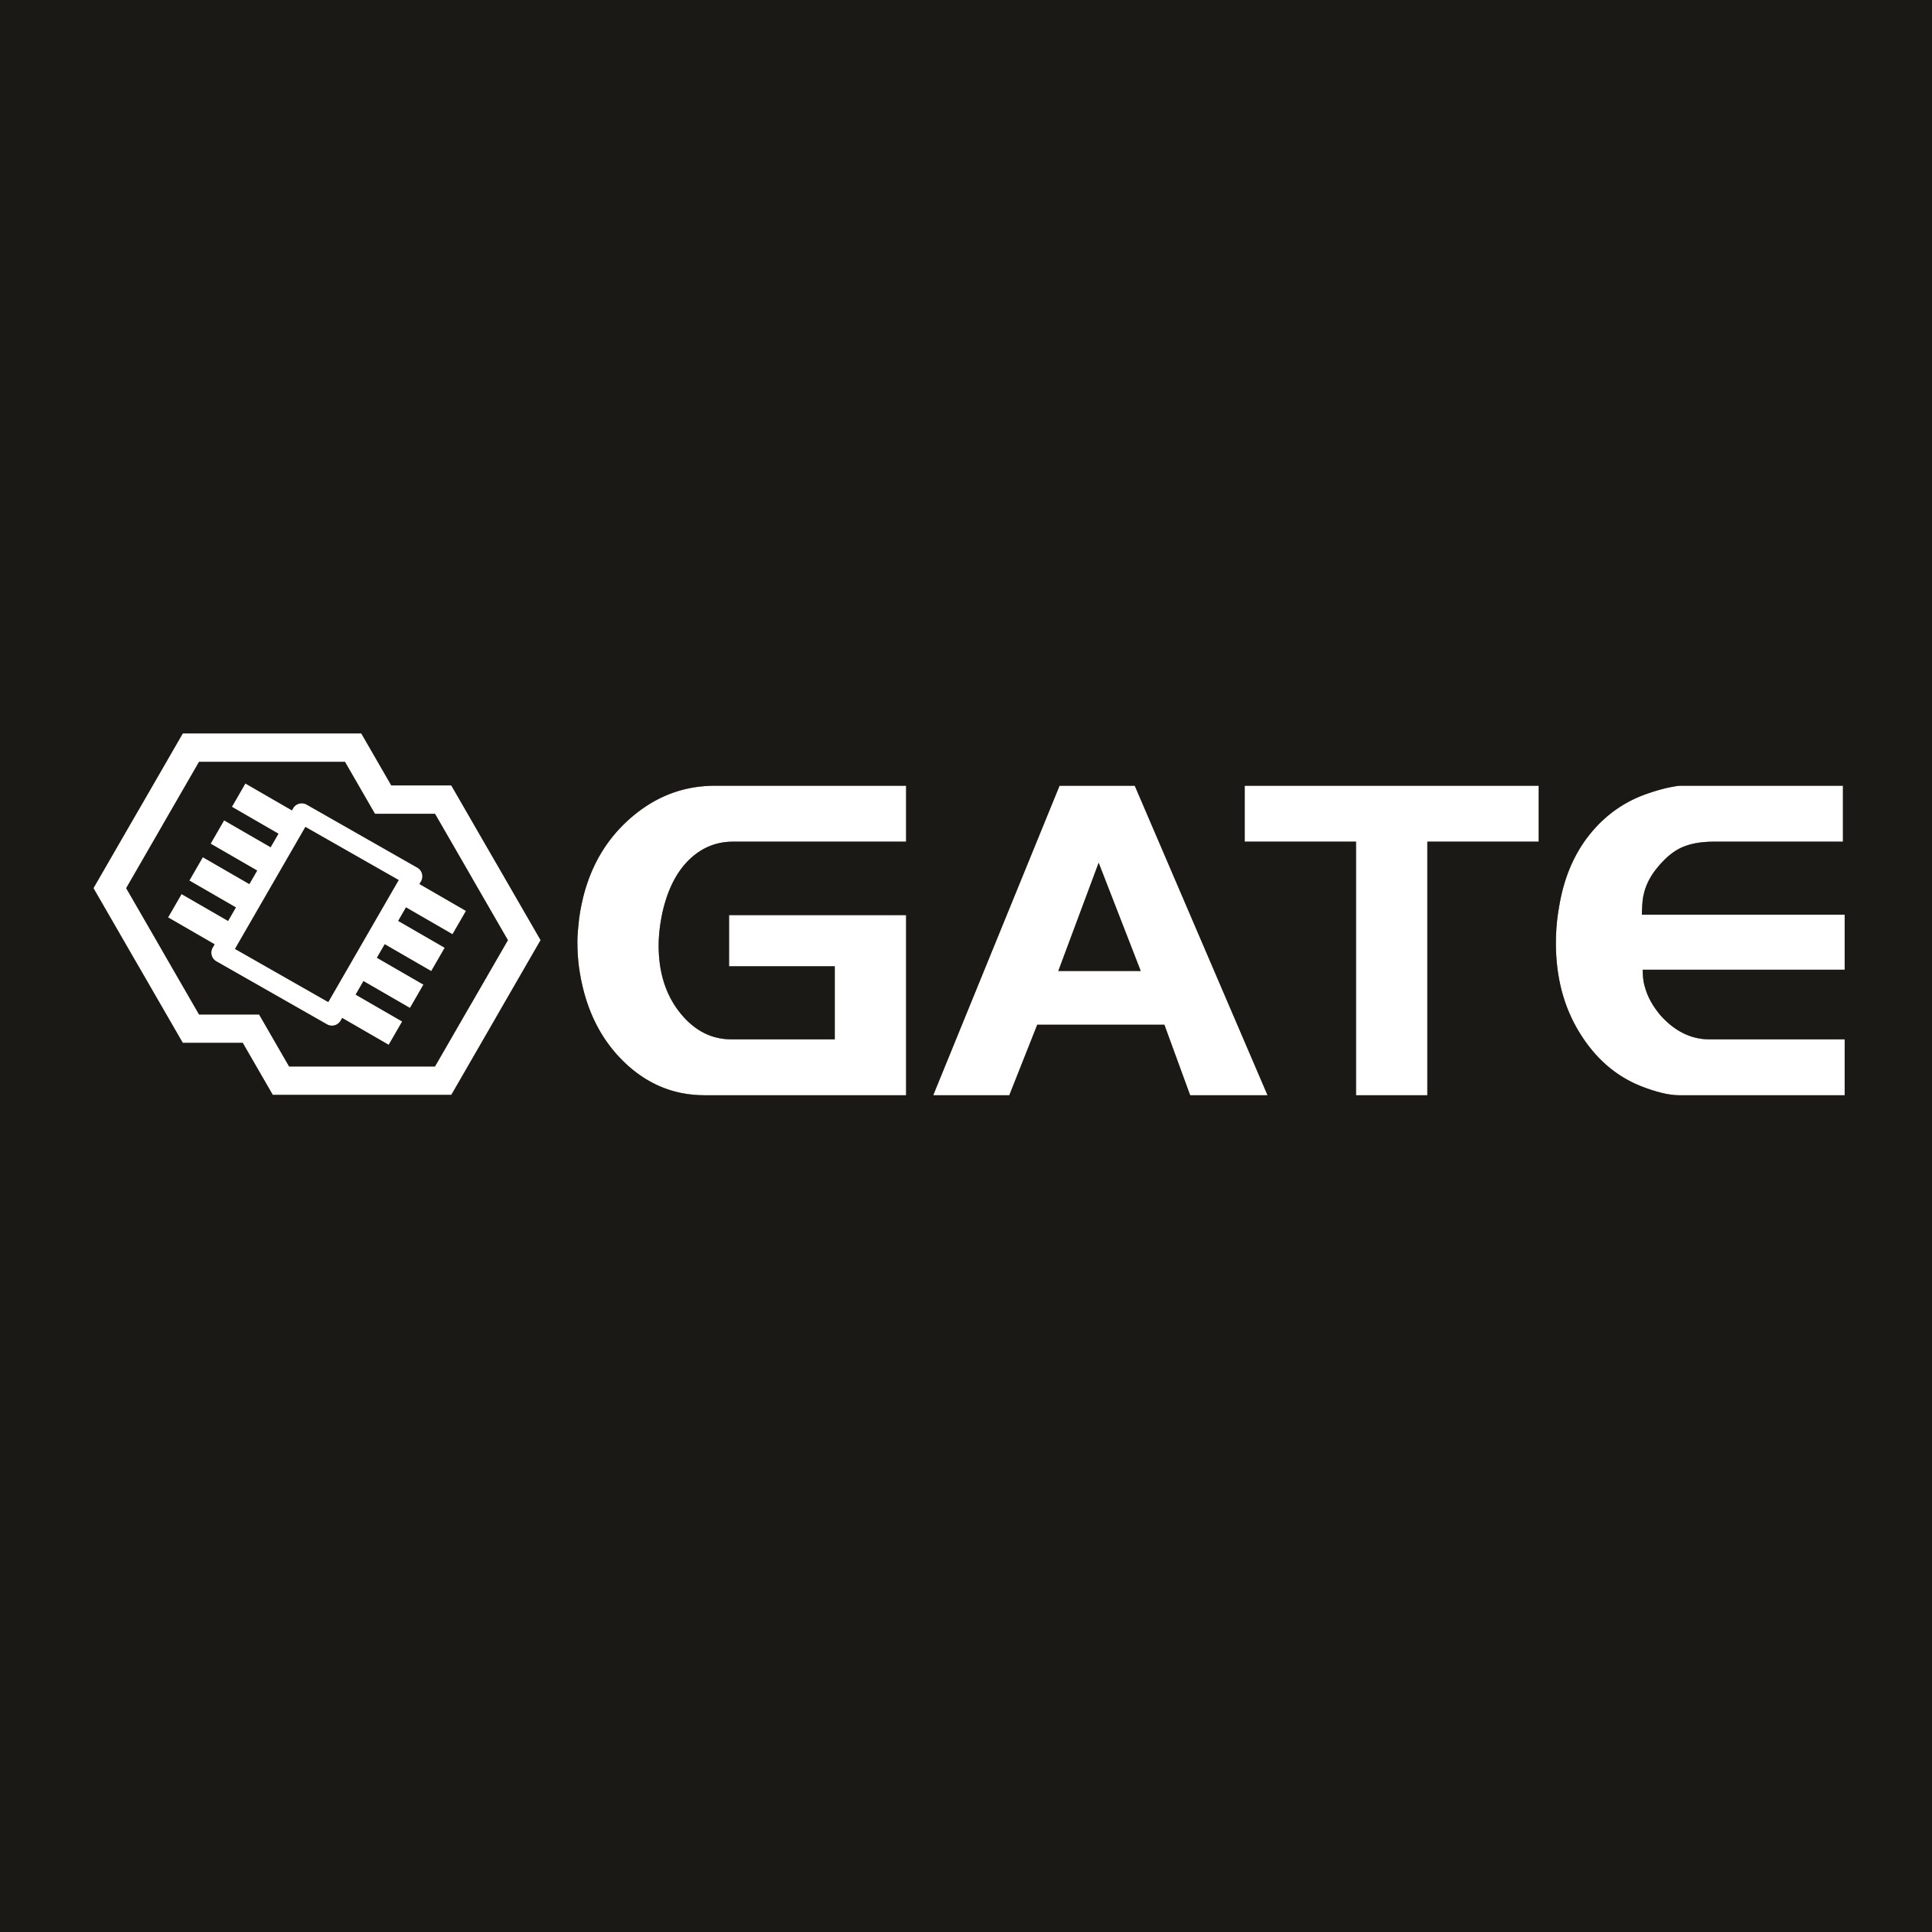 Gate Enterprise